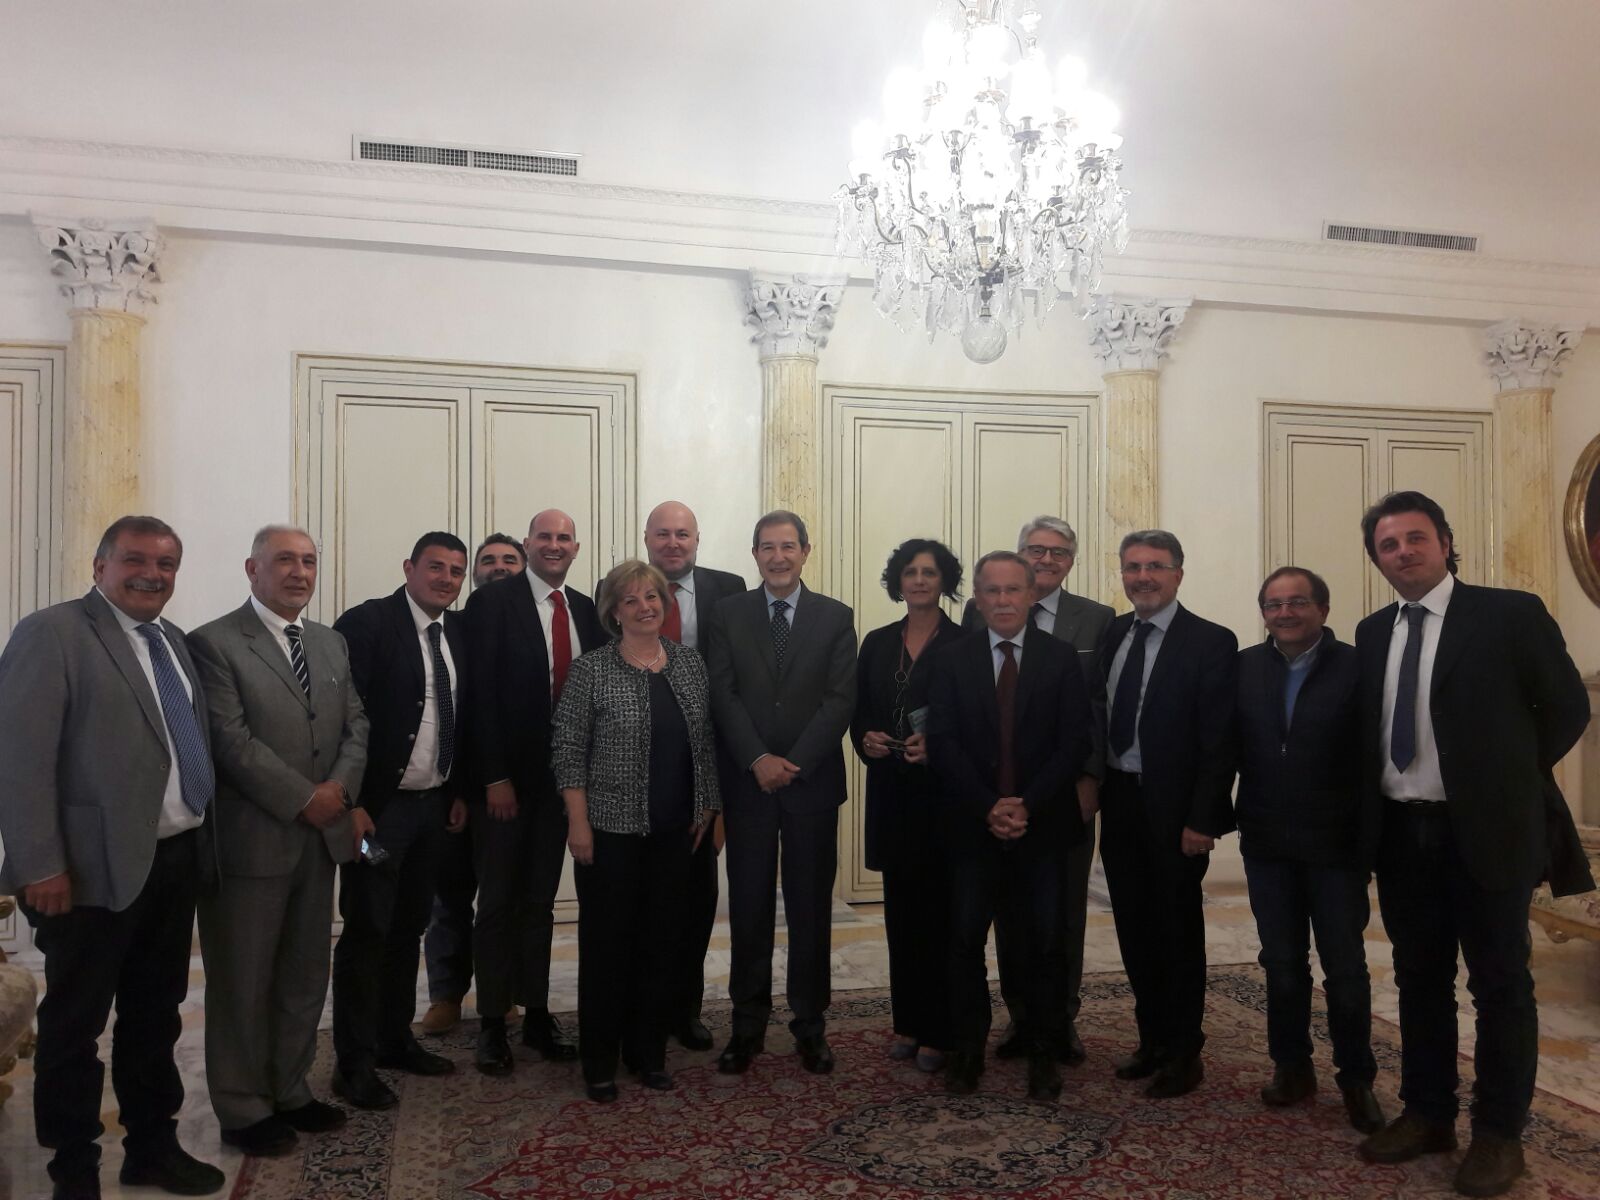 Distretti Produttivi Siciliani, “positivo incontro con il Presidente Musumeci. Il Governo regionale crede nell’importanza e funzione dei Distretti”